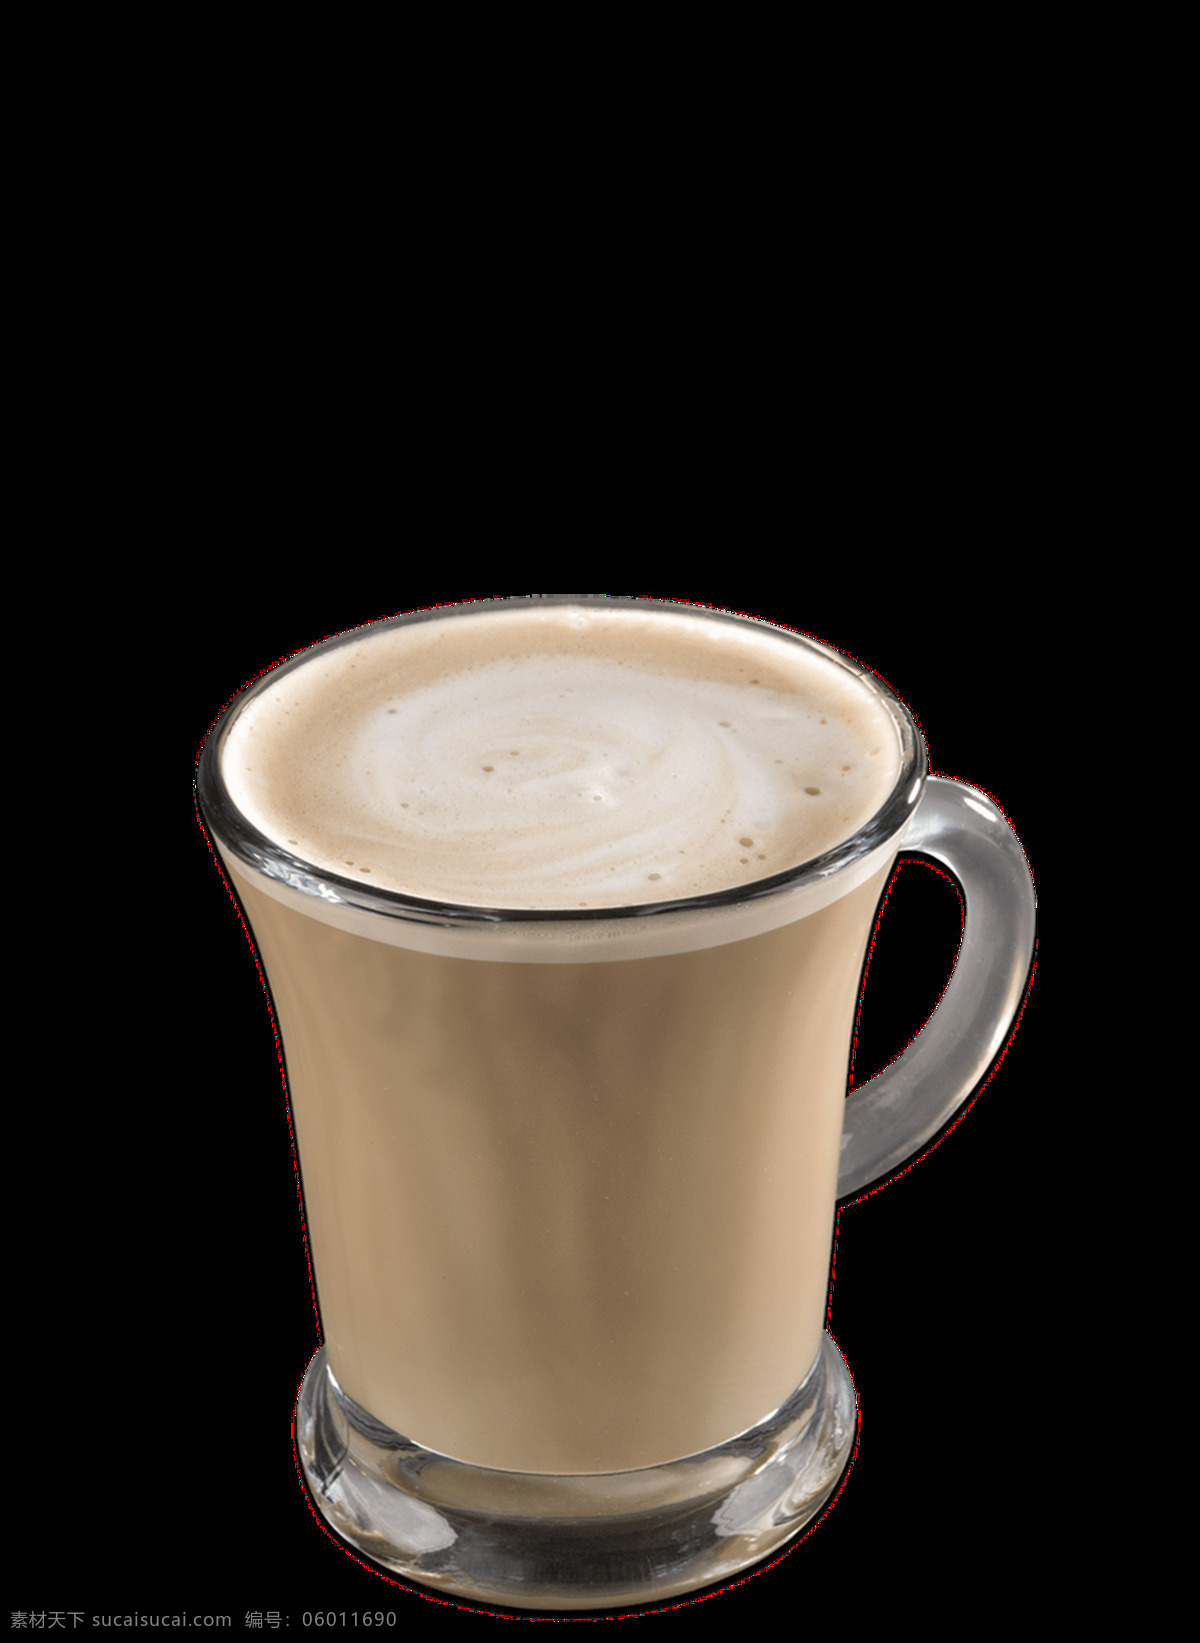 咖啡图片 咖啡 黑咖啡 二合一咖啡 牛奶咖啡 巧克力咖啡 摩卡 卡布奇诺 速溶咖啡 拉花咖啡 拿铁 美式 png图 透明图 免扣图 透明背景 透明底 抠图